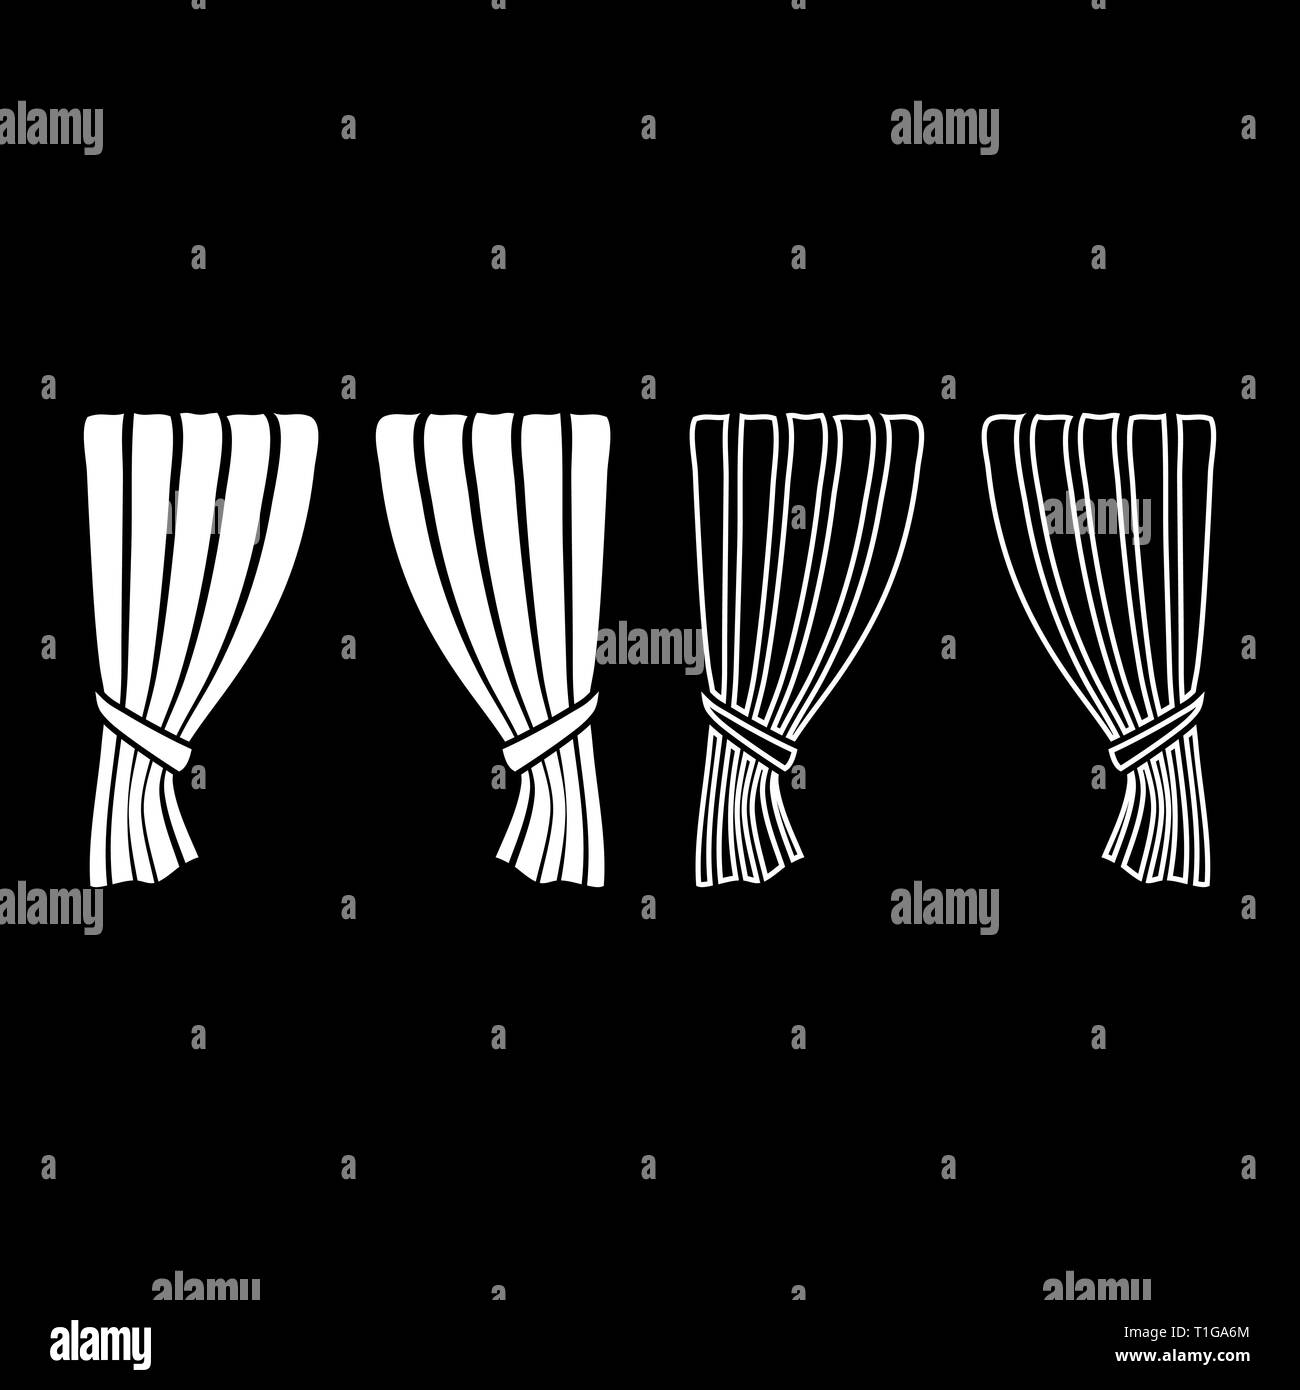 Gardinen Vorhang Vorhang Verschlussvorhang Schatten Portiere Vorhänge für  Zeremonie Leistung luxuriöse Vorhänge Eröffnung Ankündigung Stufe  Stock-Vektorgrafik - Alamy